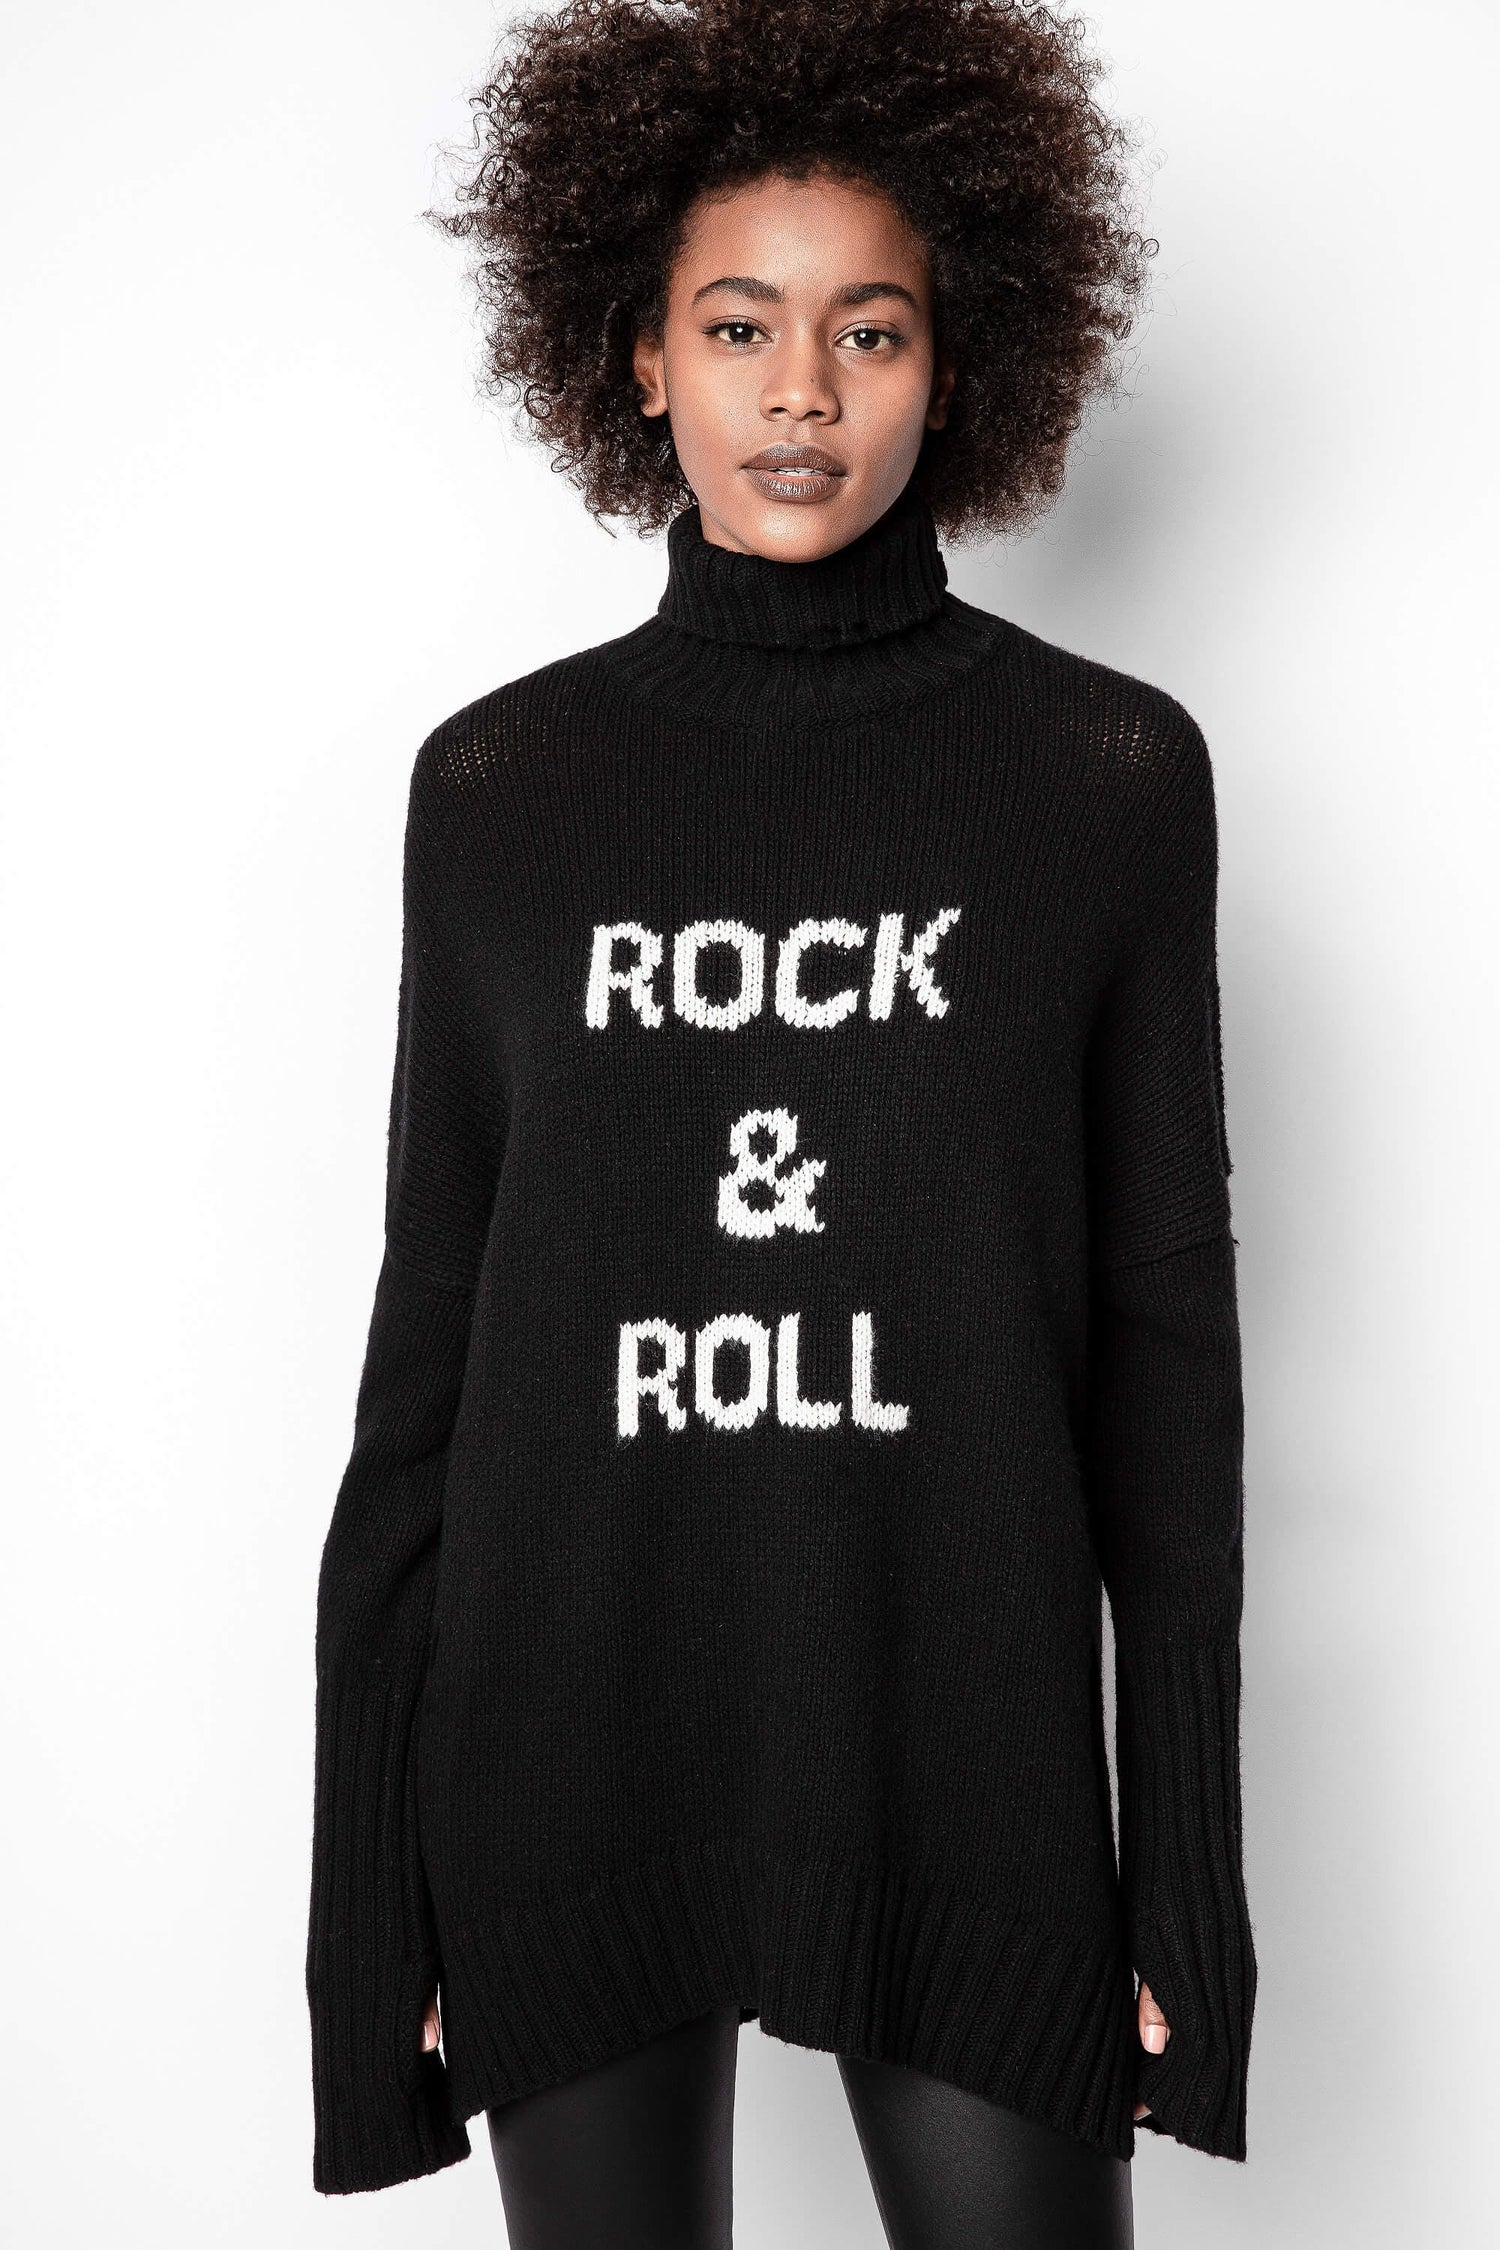 Alma Rock & Roll jumper, black